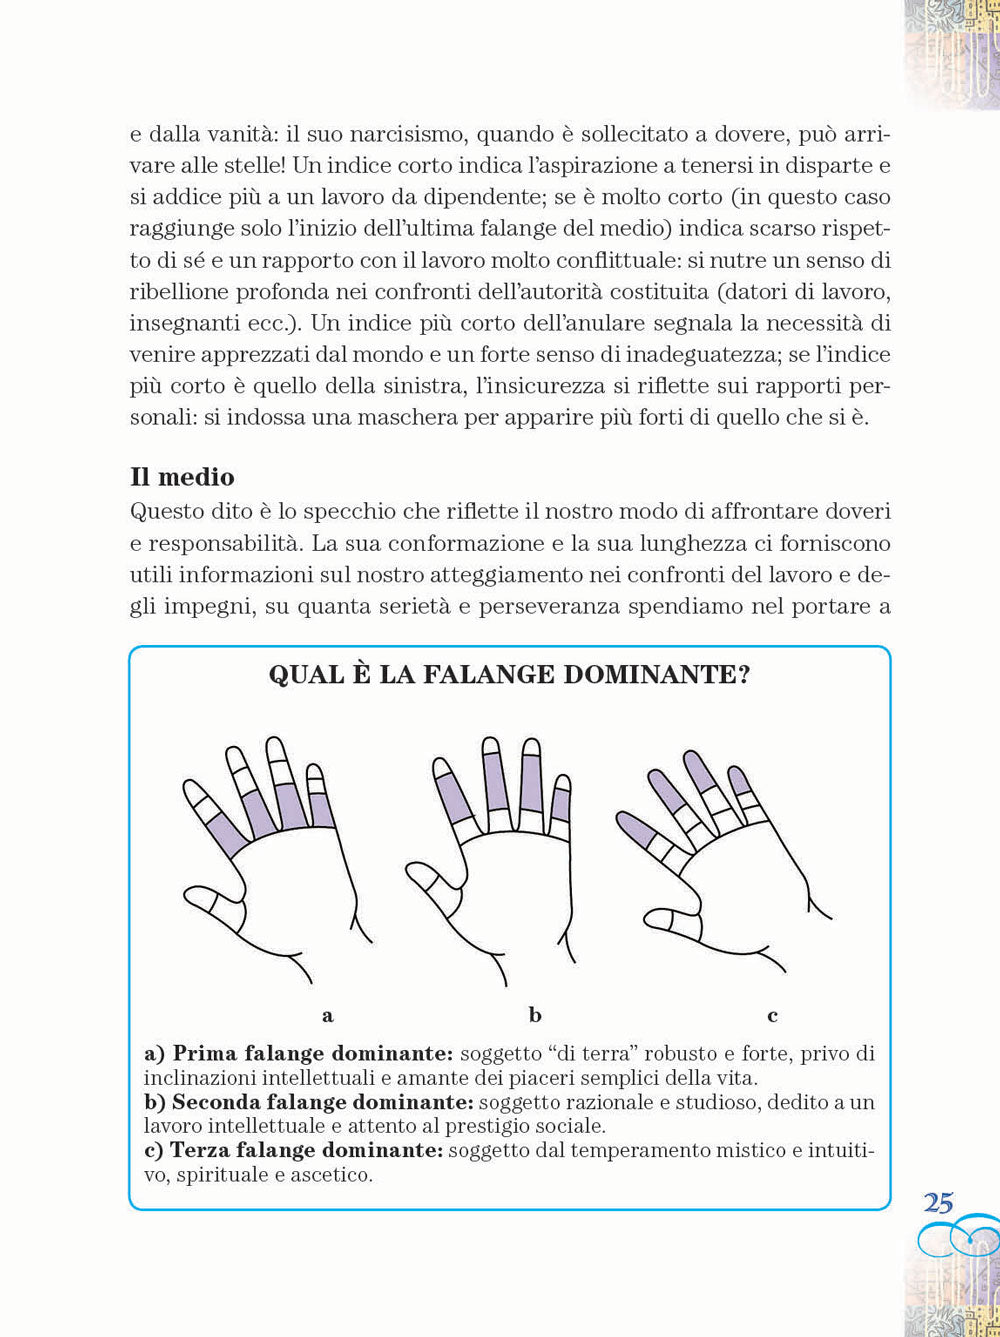 Come leggere la mano::Per conoscere il carattere, le attitudini, l'amore, la salute, la carriera - Con poster: la mappa della mano